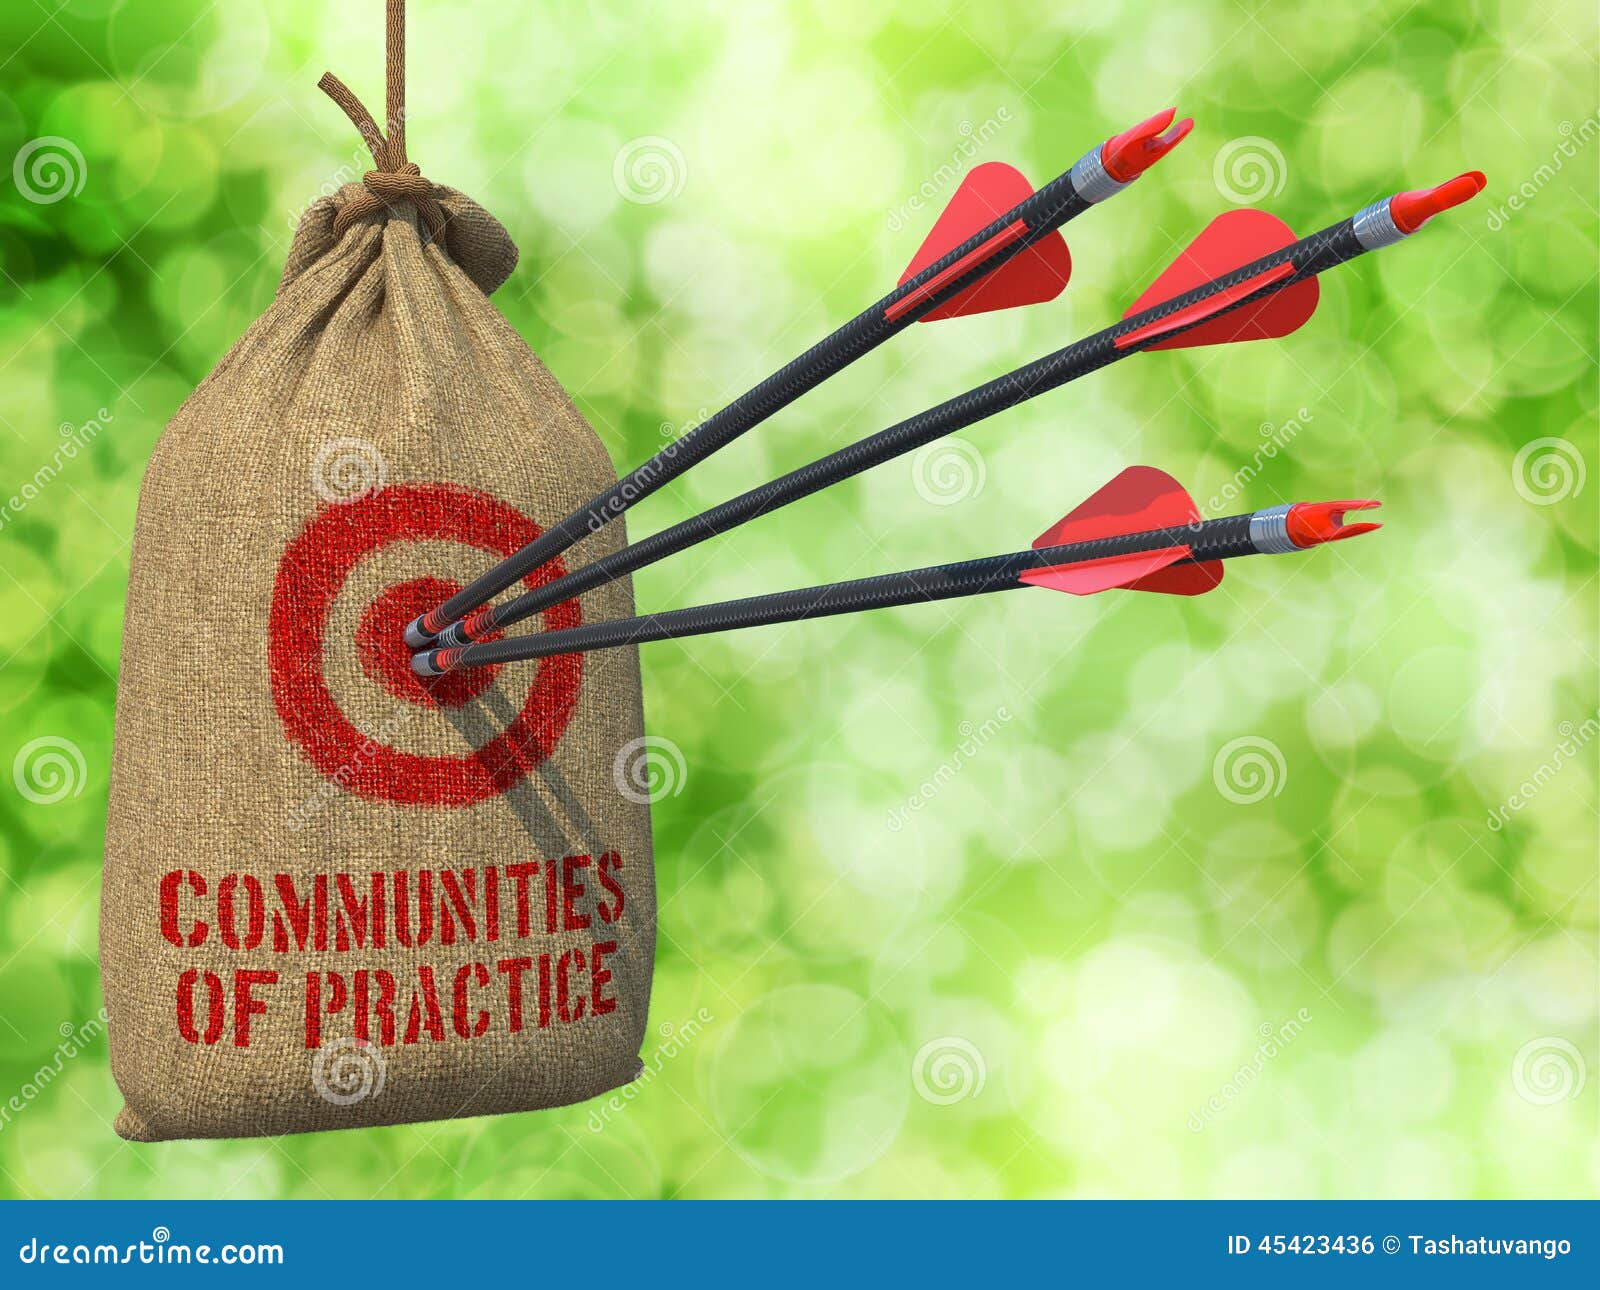 communities of practice - arrows hit in red target